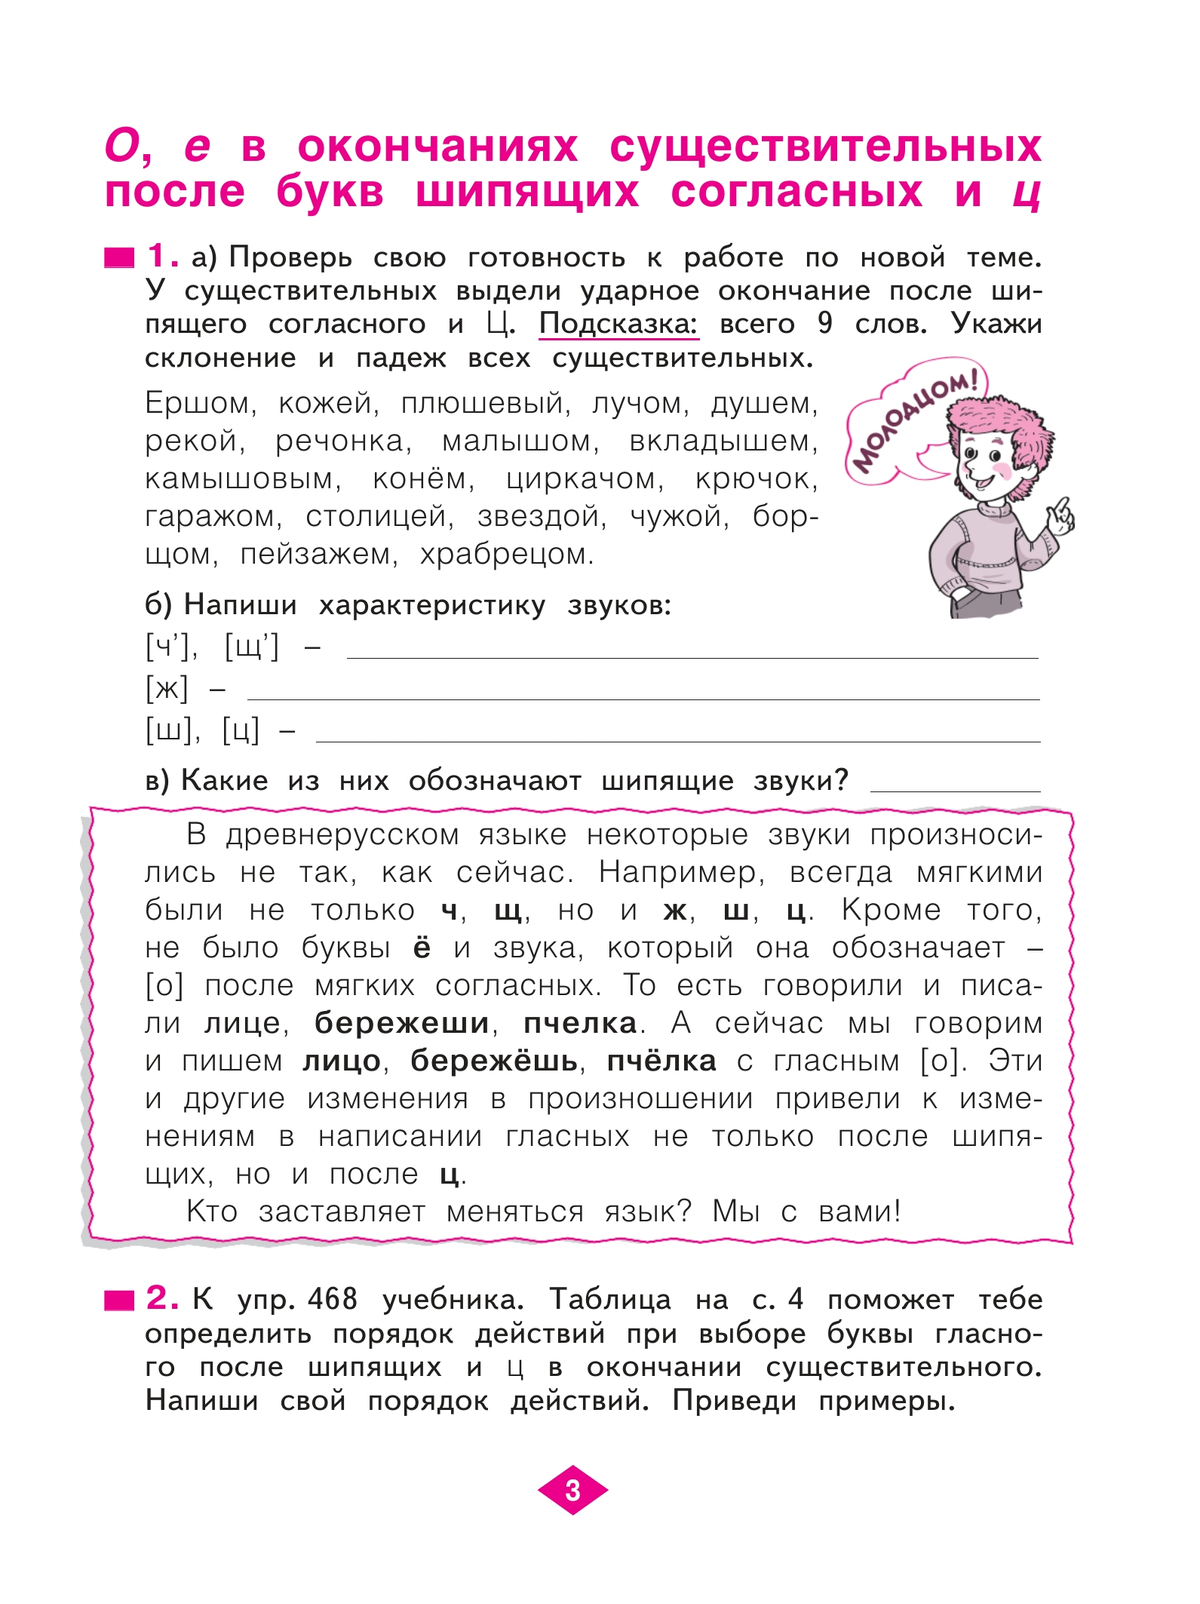 Русский язык. Рабочая тетрадь. 3 класс. В 4-х частях. Часть 4 2